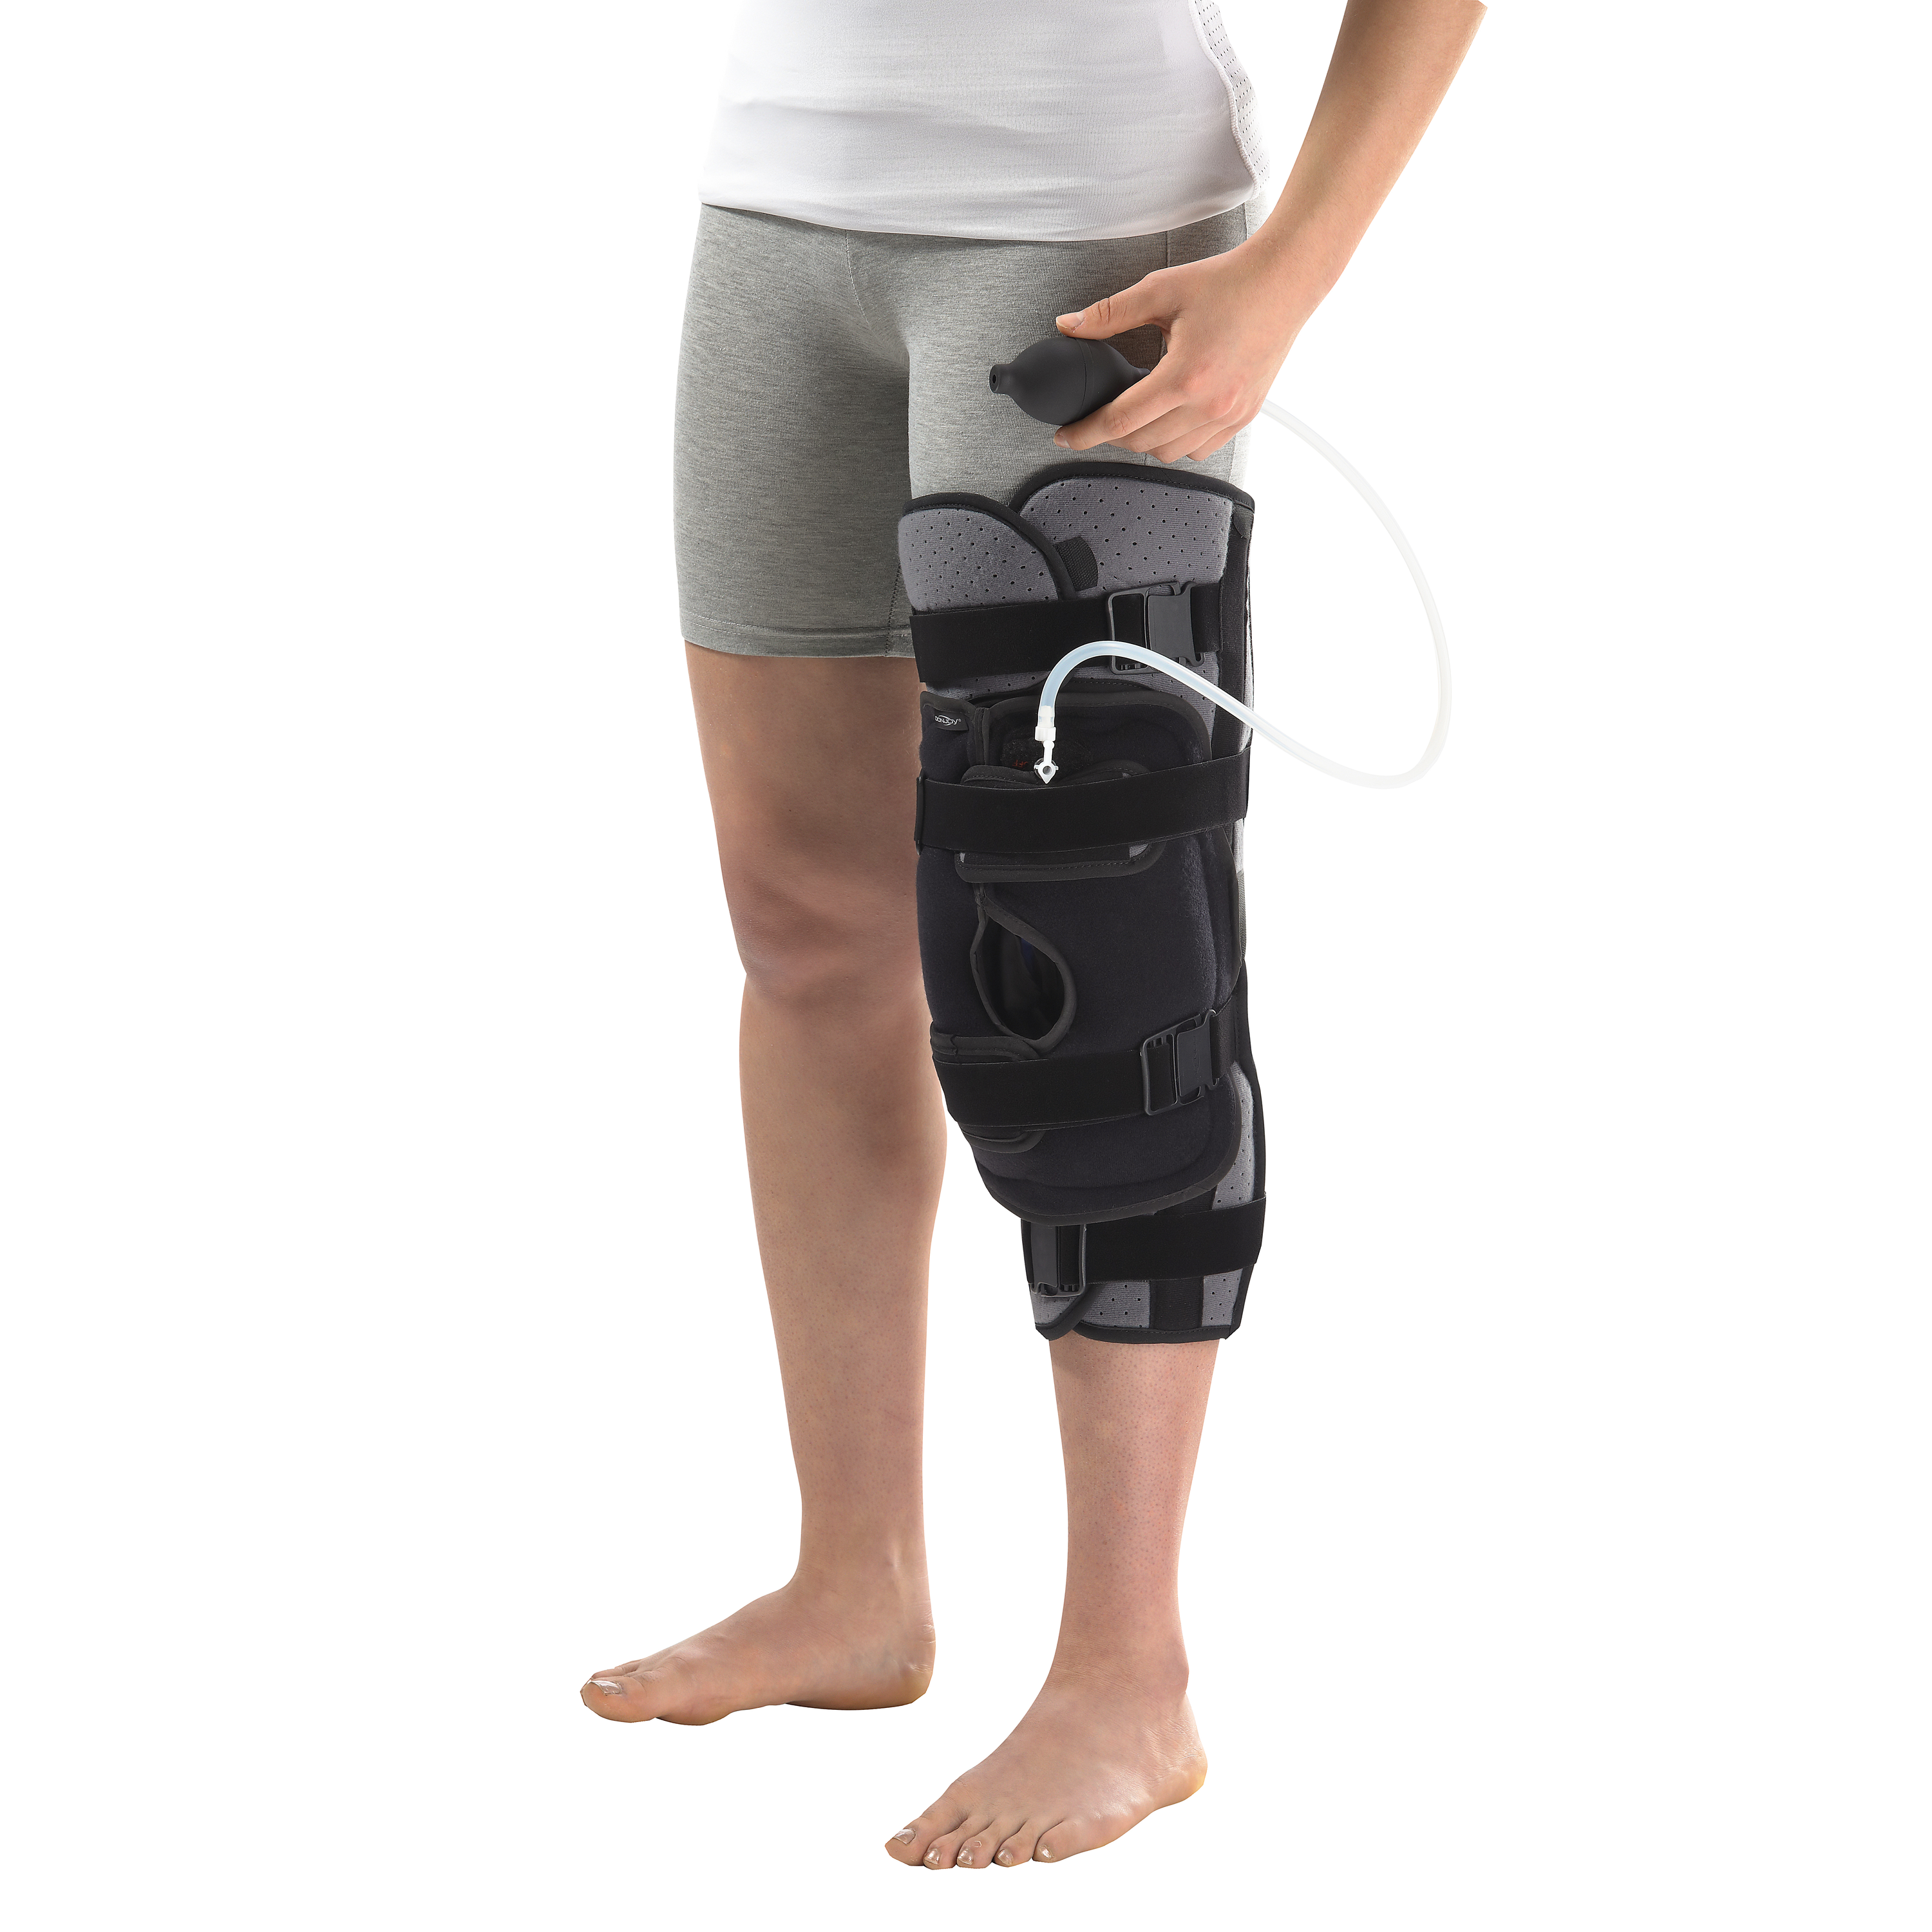 Produktbild DONJOY® Immo AT4 Everest, Dreiteilige Knieorthese zur Immobilisierung, einstellbar